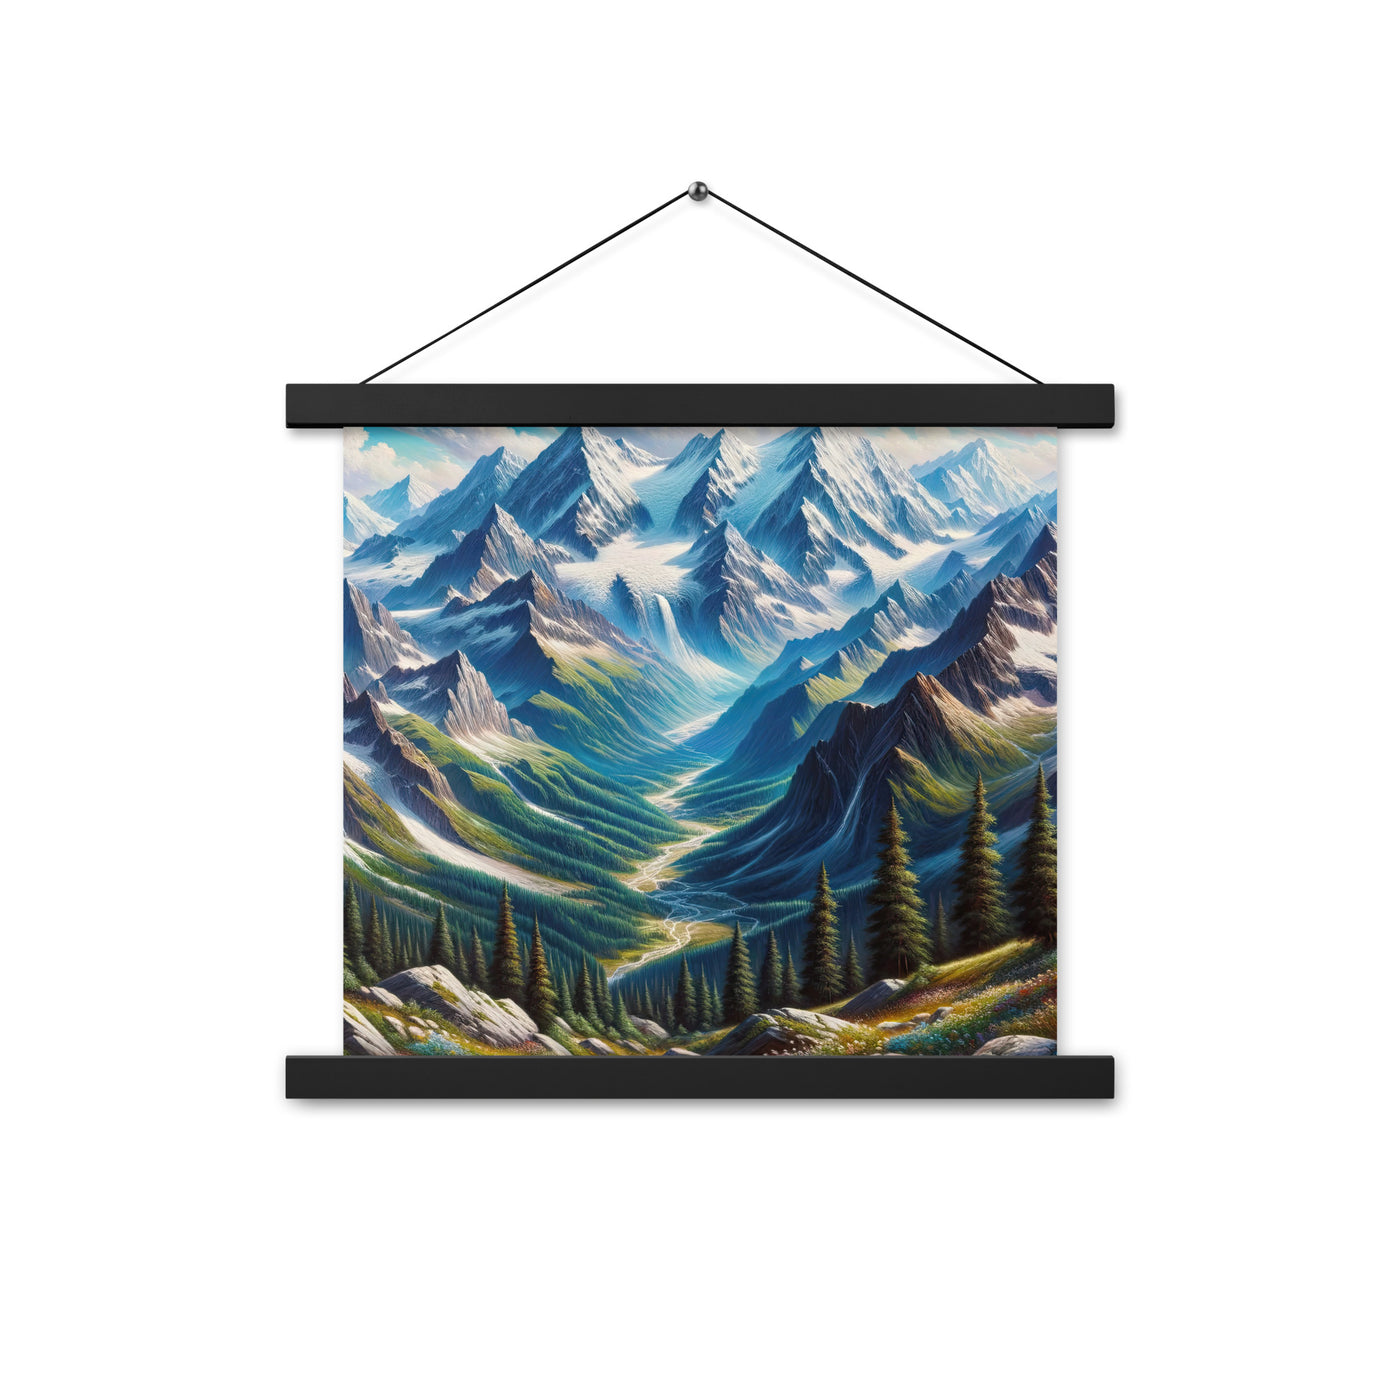 Panorama-Ölgemälde der Alpen mit schneebedeckten Gipfeln und schlängelnden Flusstälern - Premium Poster mit Aufhängung berge xxx yyy zzz 35.6 x 35.6 cm